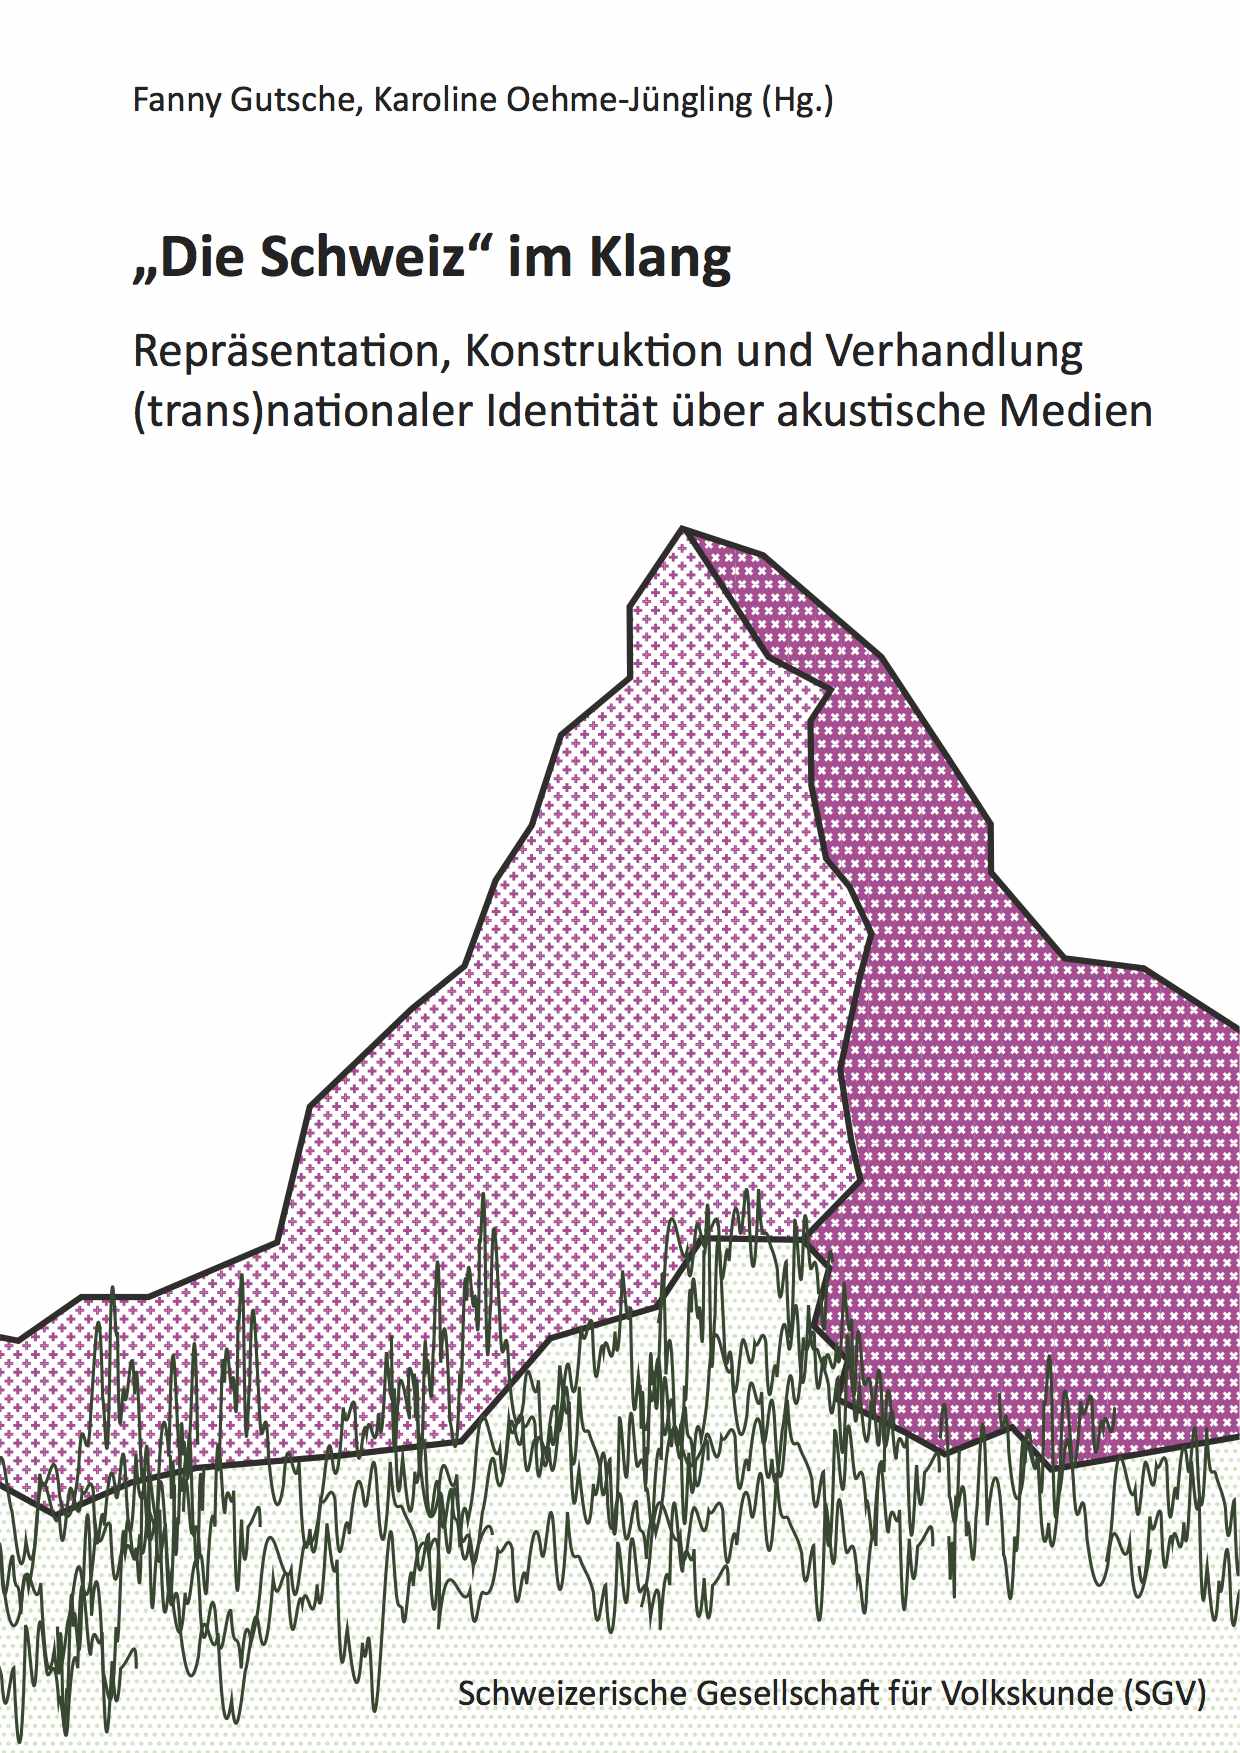 „Die Schweiz“ im Klang. Fanny Gutsche, Karoline Oehme-Jüngling (Hg.), Schweizerisches Gesellschaft für Volkskunde 2014